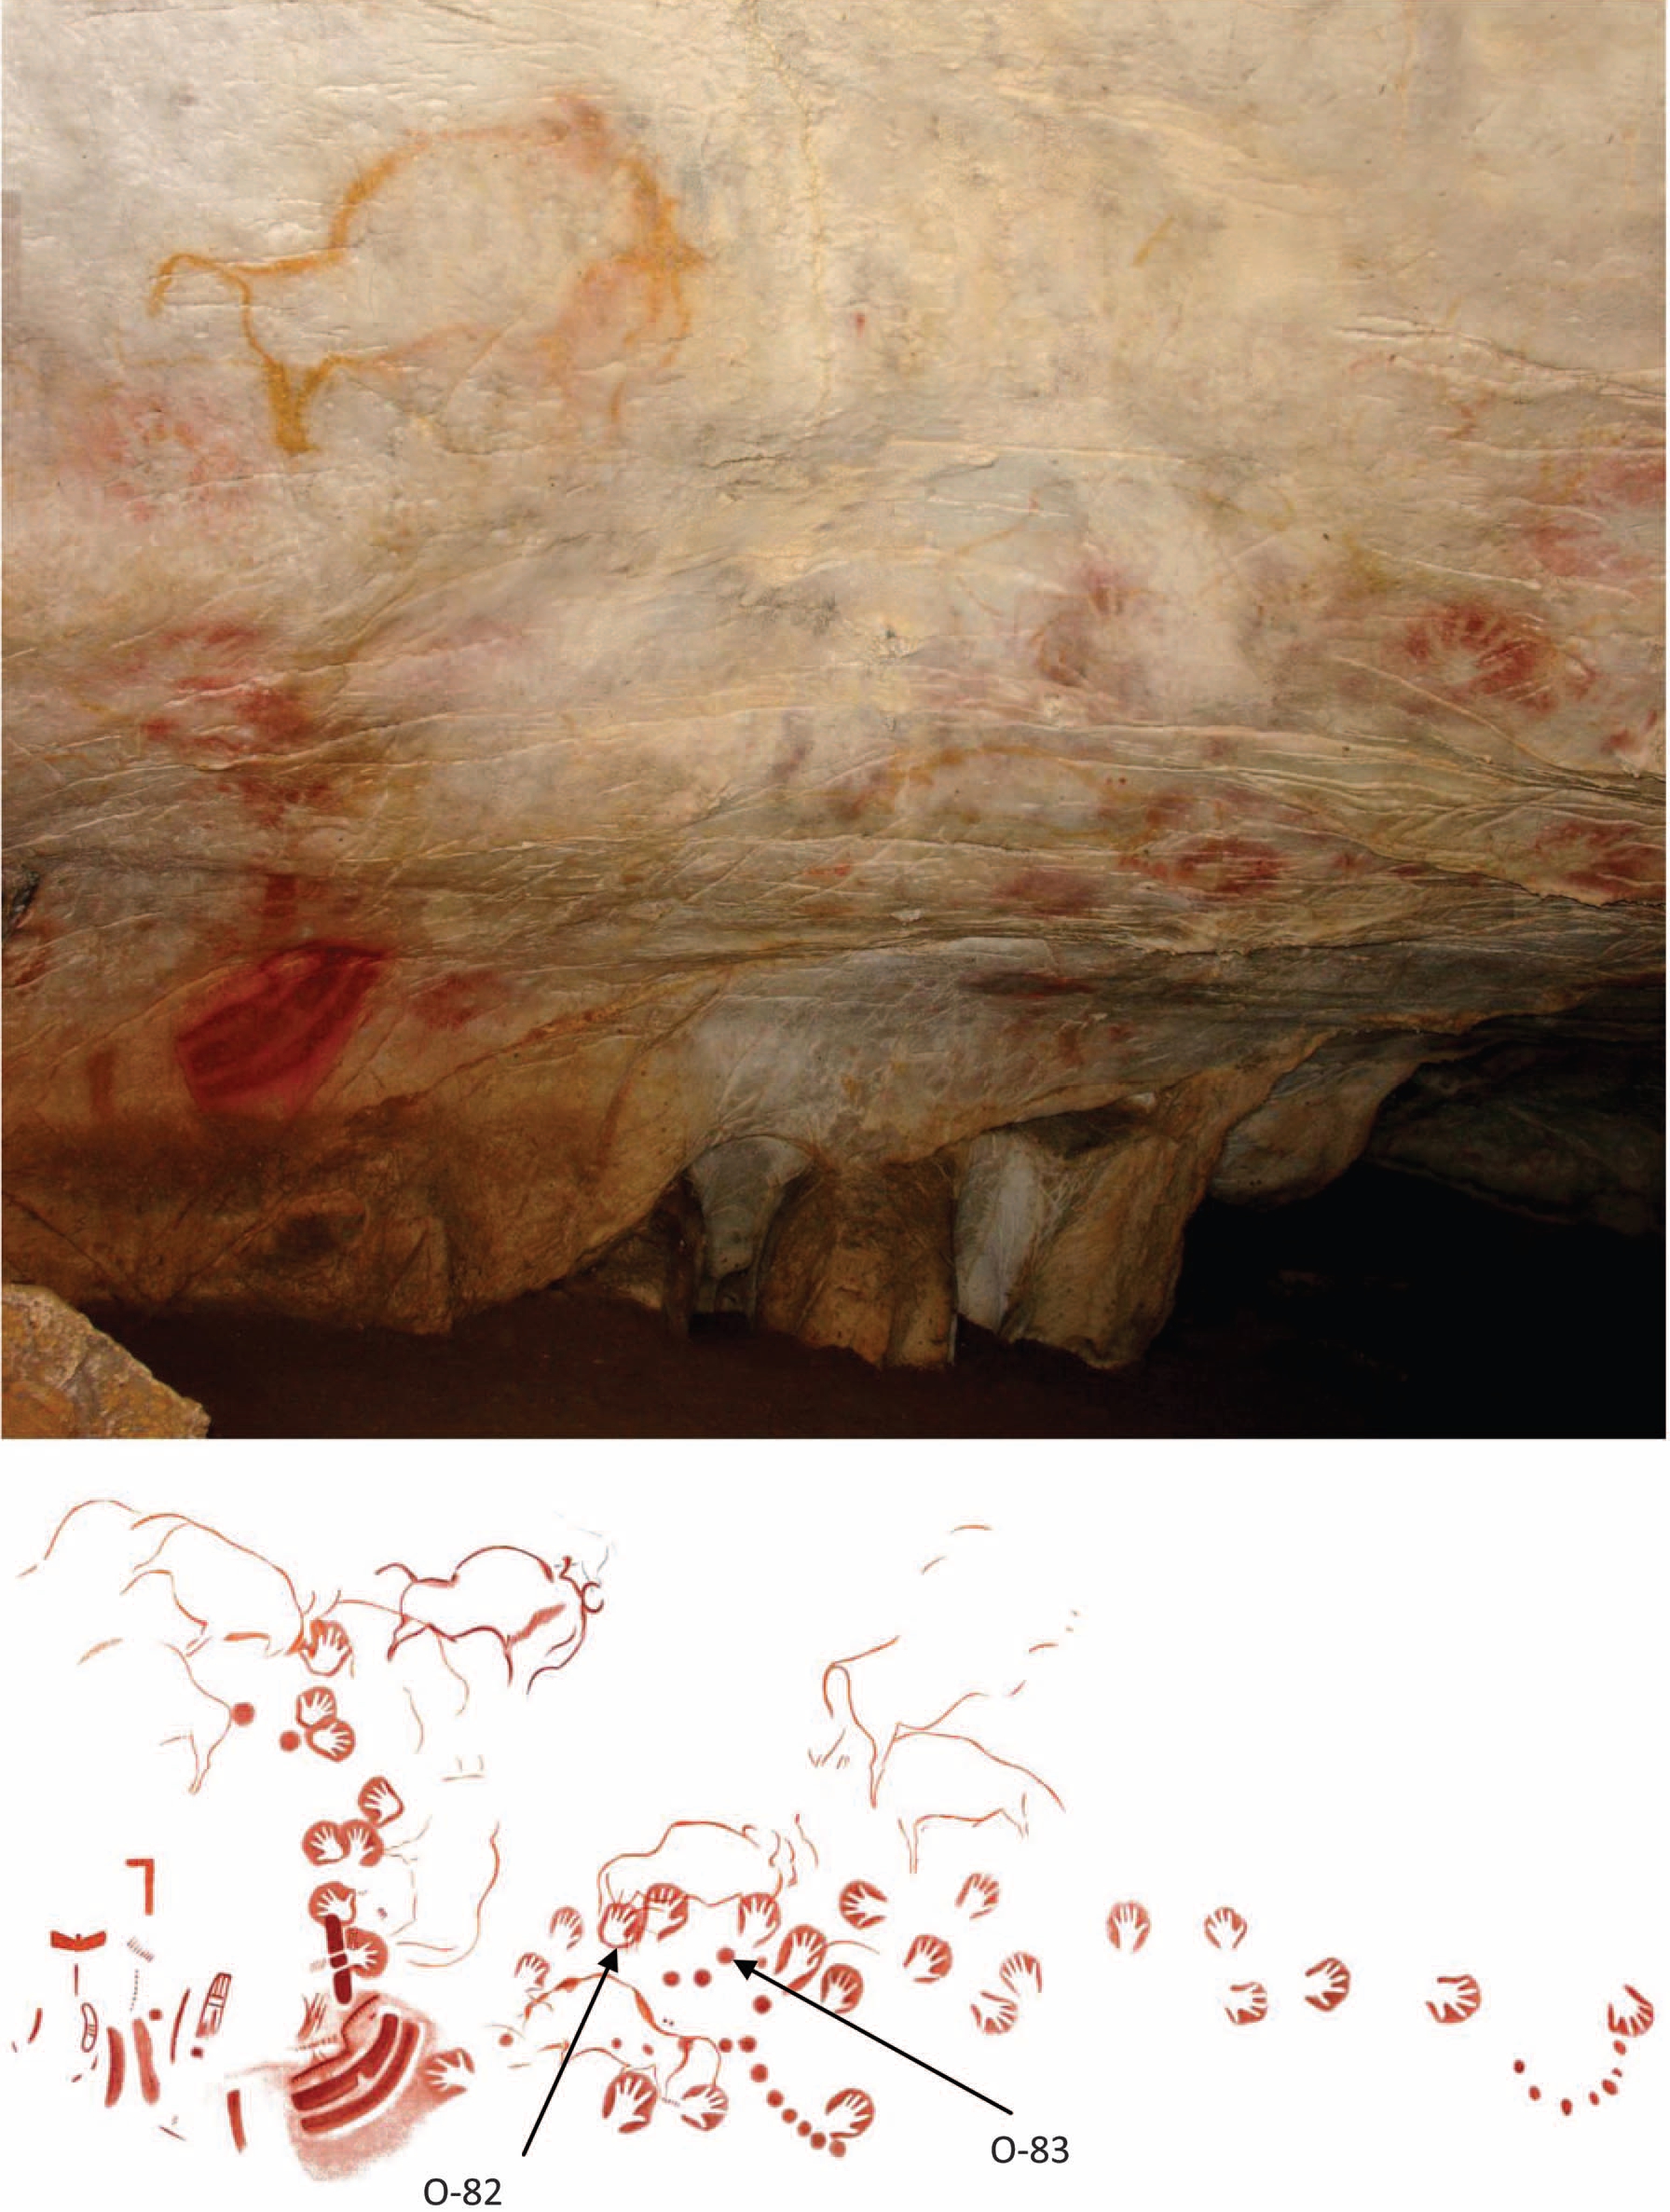 Les peintures rupestres O-83 seraient âgées d'au moins 40.800 ans. Elles ont été trouvées dans la grotte d'El Castillo (photographie du haut) dans le nord de l'Espagne. Elles ont été recouvertes par des empreintes de mains (O-82), visibles sur le schéma du bas, il y a au minimum 37.900 ans. © Pike et al. 2012, Science